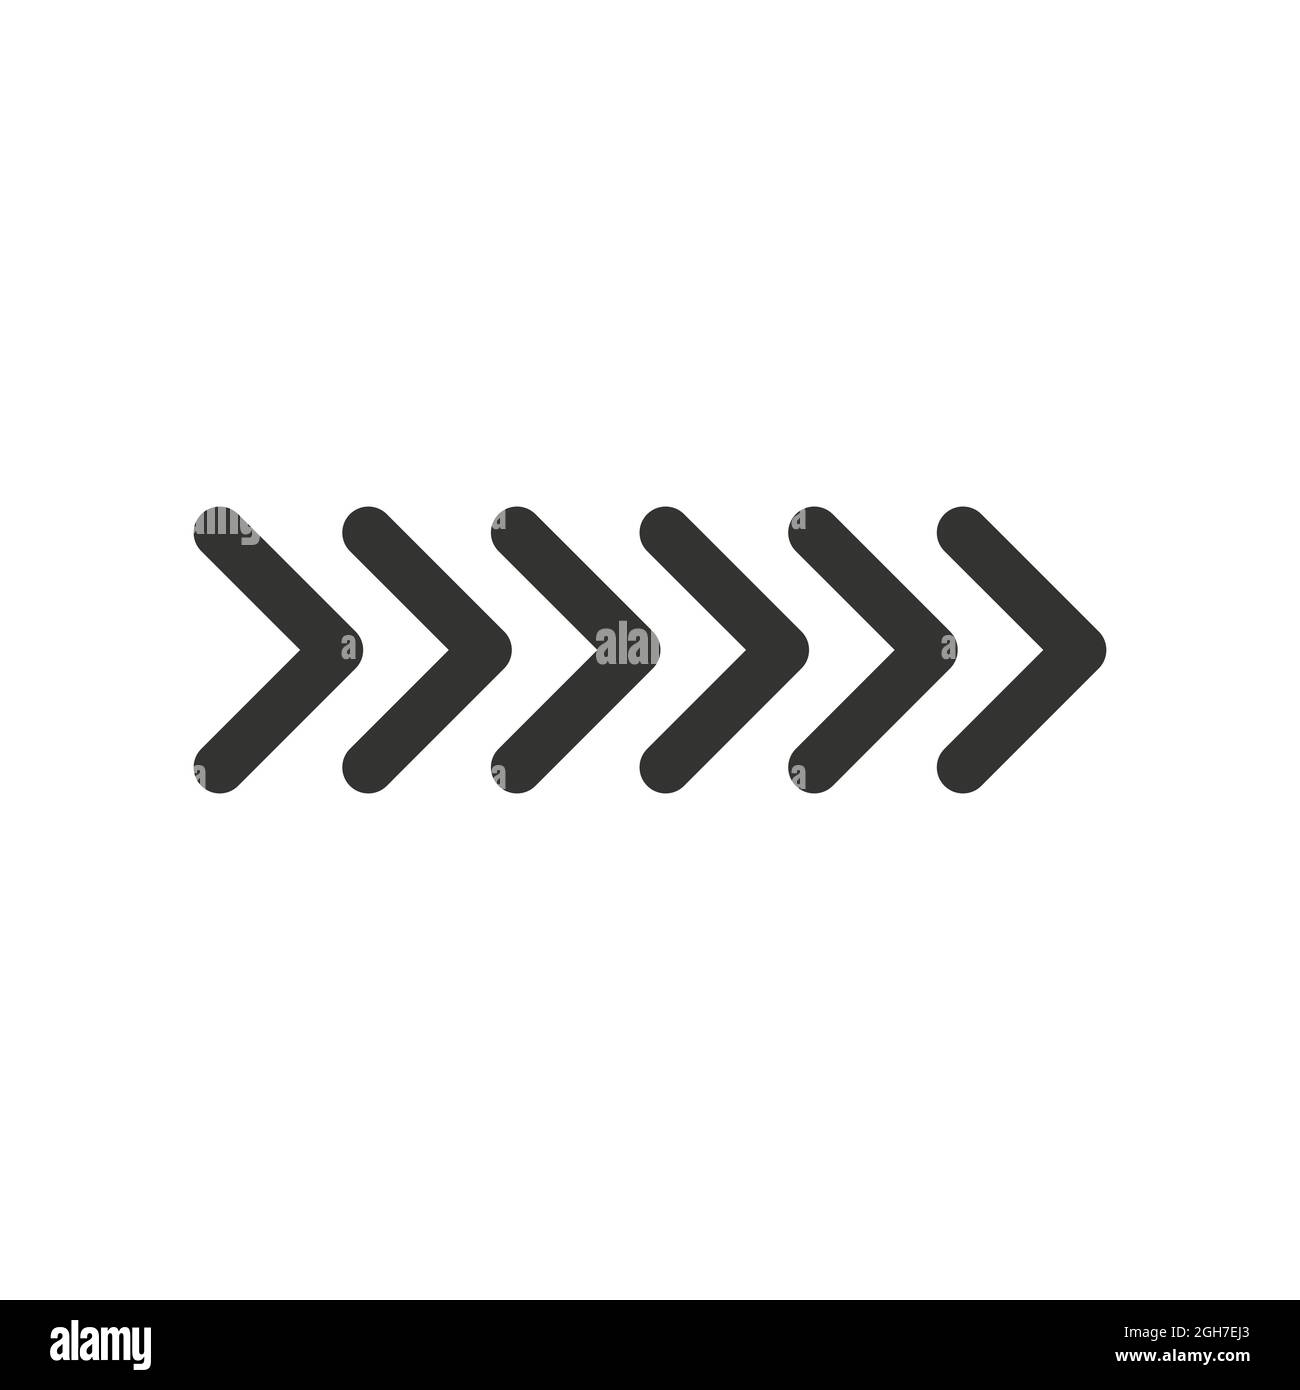 Frecce vettoriali nere rivolte a destra, sei frecce in fila. Segnaletica per la svolta. Illustrazione del vettore di scorta isolata su sfondo bianco. Illustrazione Vettoriale